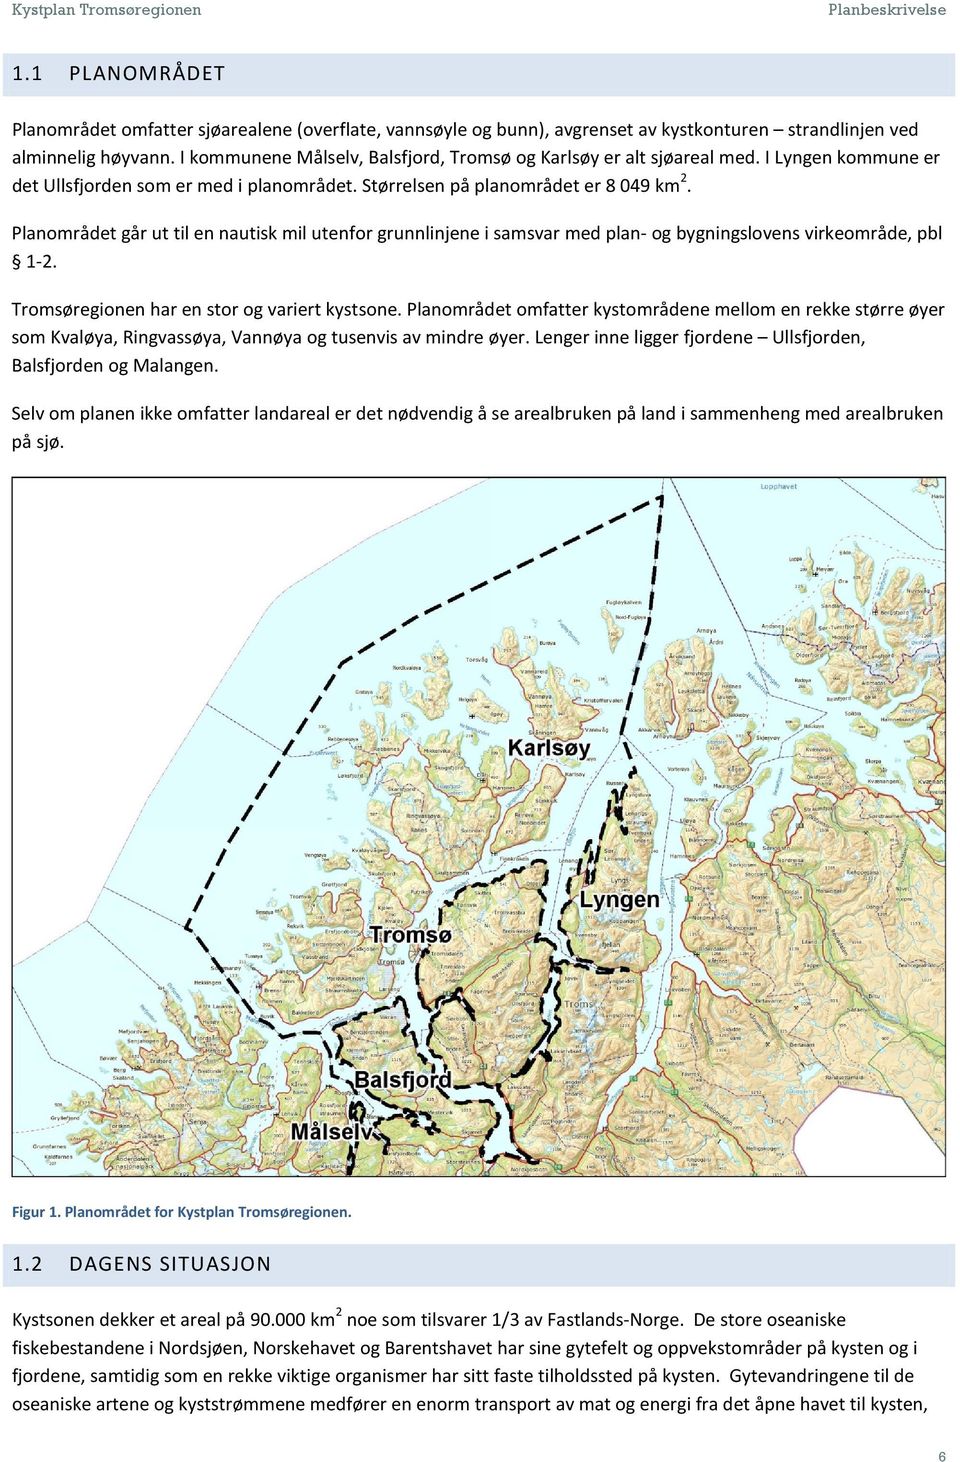 Planområdet går ut til en nautisk mil utenfor grunnlinjene i samsvar med plan- og bygningslovens virkeområde, pbl 1-2. Tromsøregionen har en stor og variert kystsone.